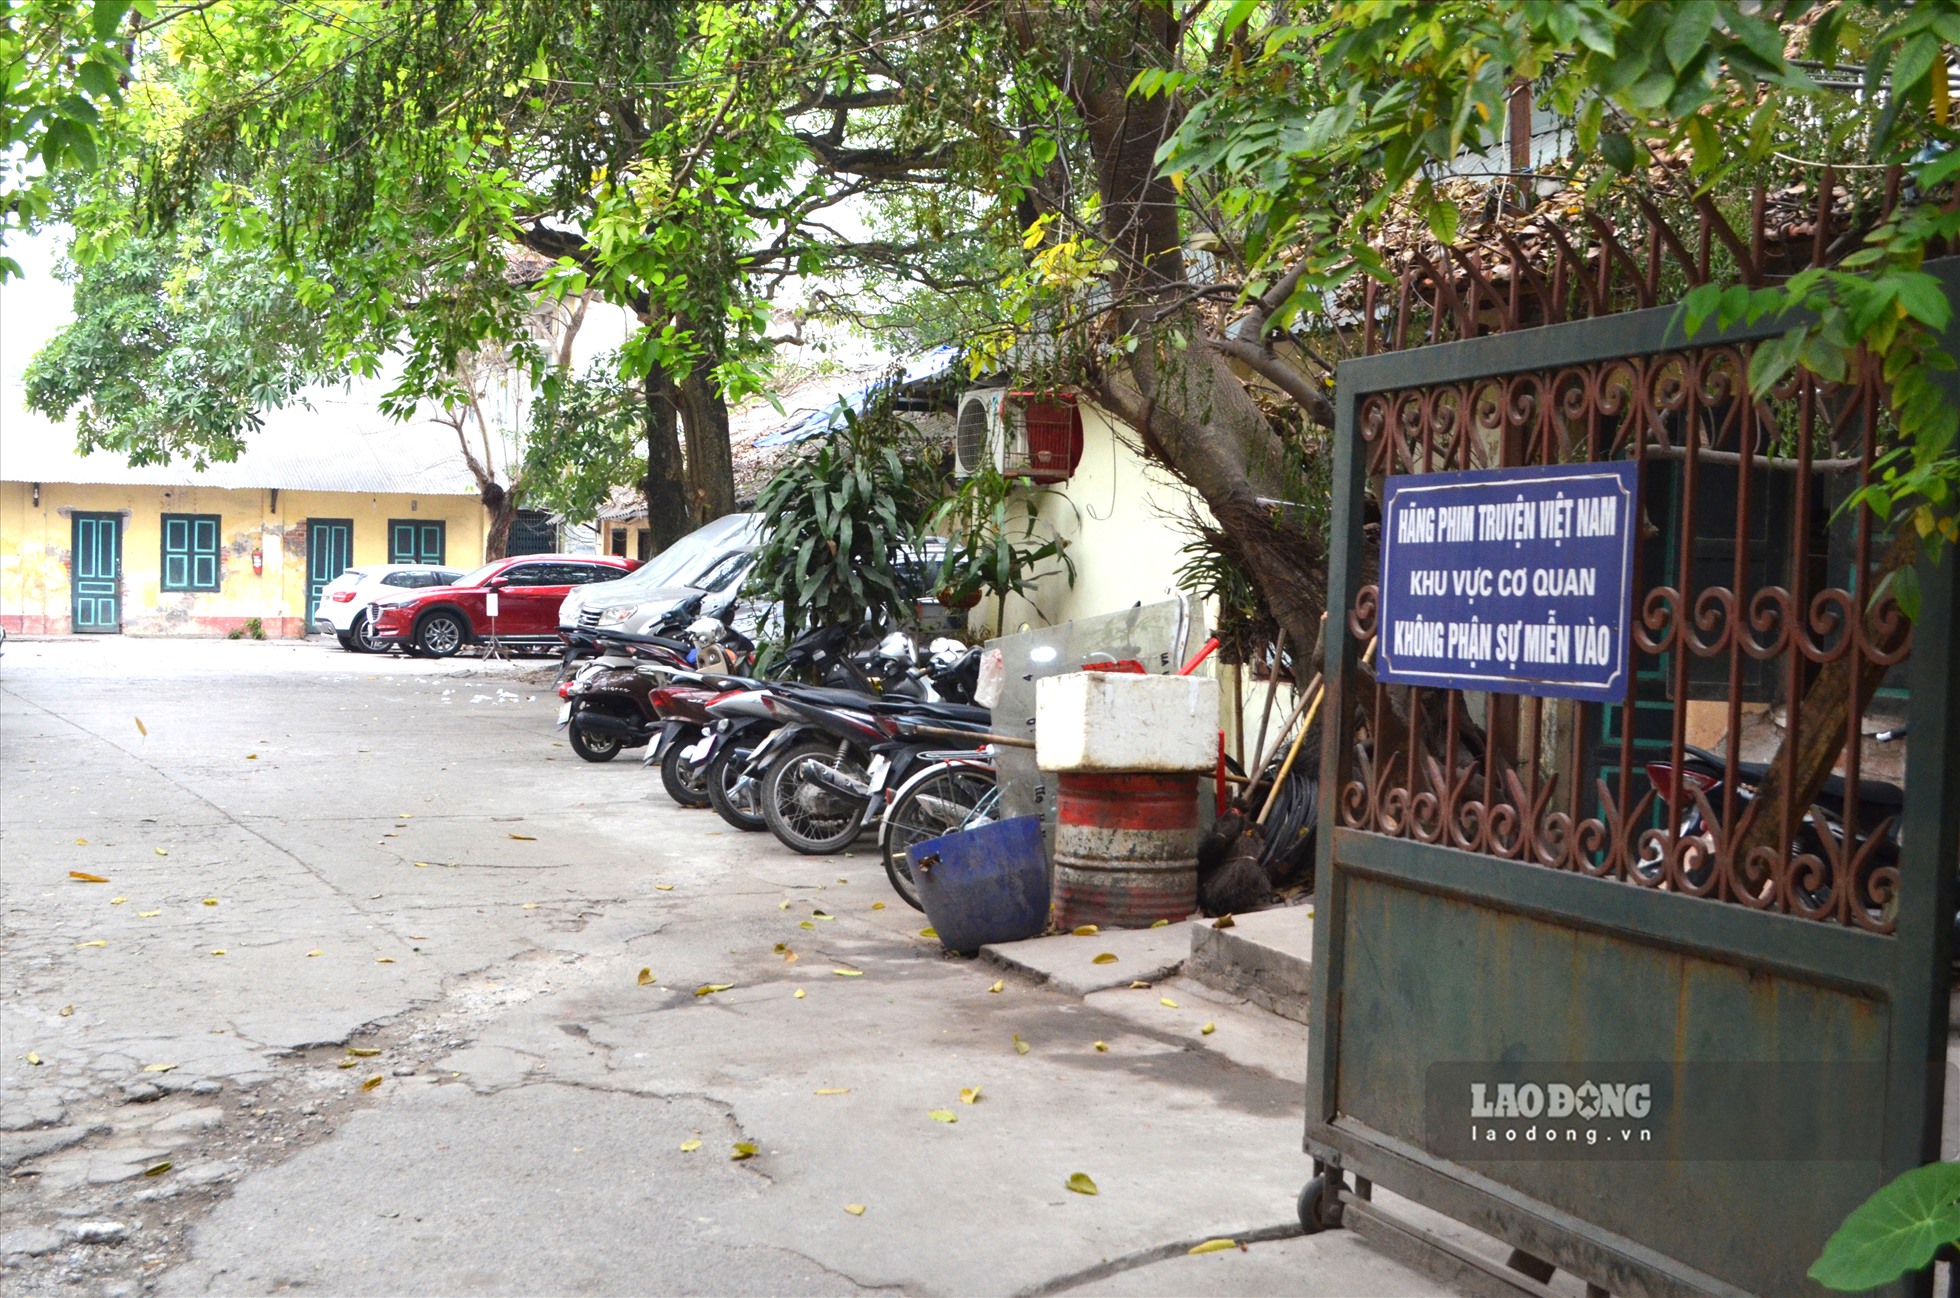 Ghi nhận của Lao Động, khu vực cổng chính trụ sở Hãng phim, giờ là nơi trông giữ xe ô tô, xe máy.